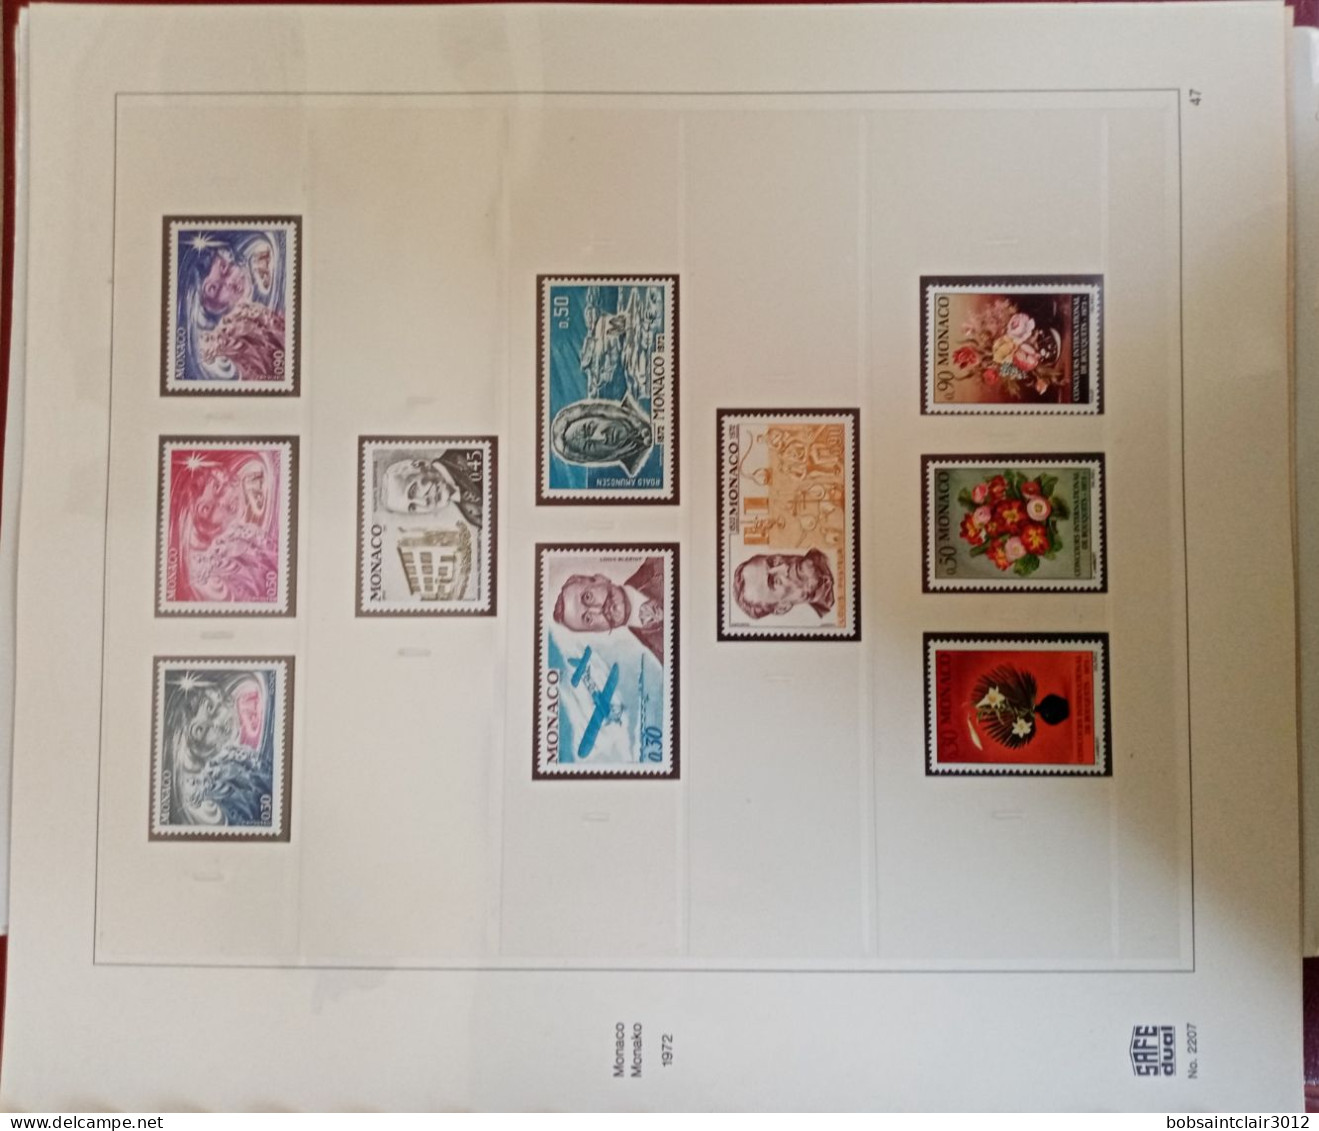 Album de timbres Monaco SAFE Dual numéro 2207 avec timbres neuf 1er choix de 1960 à 1972